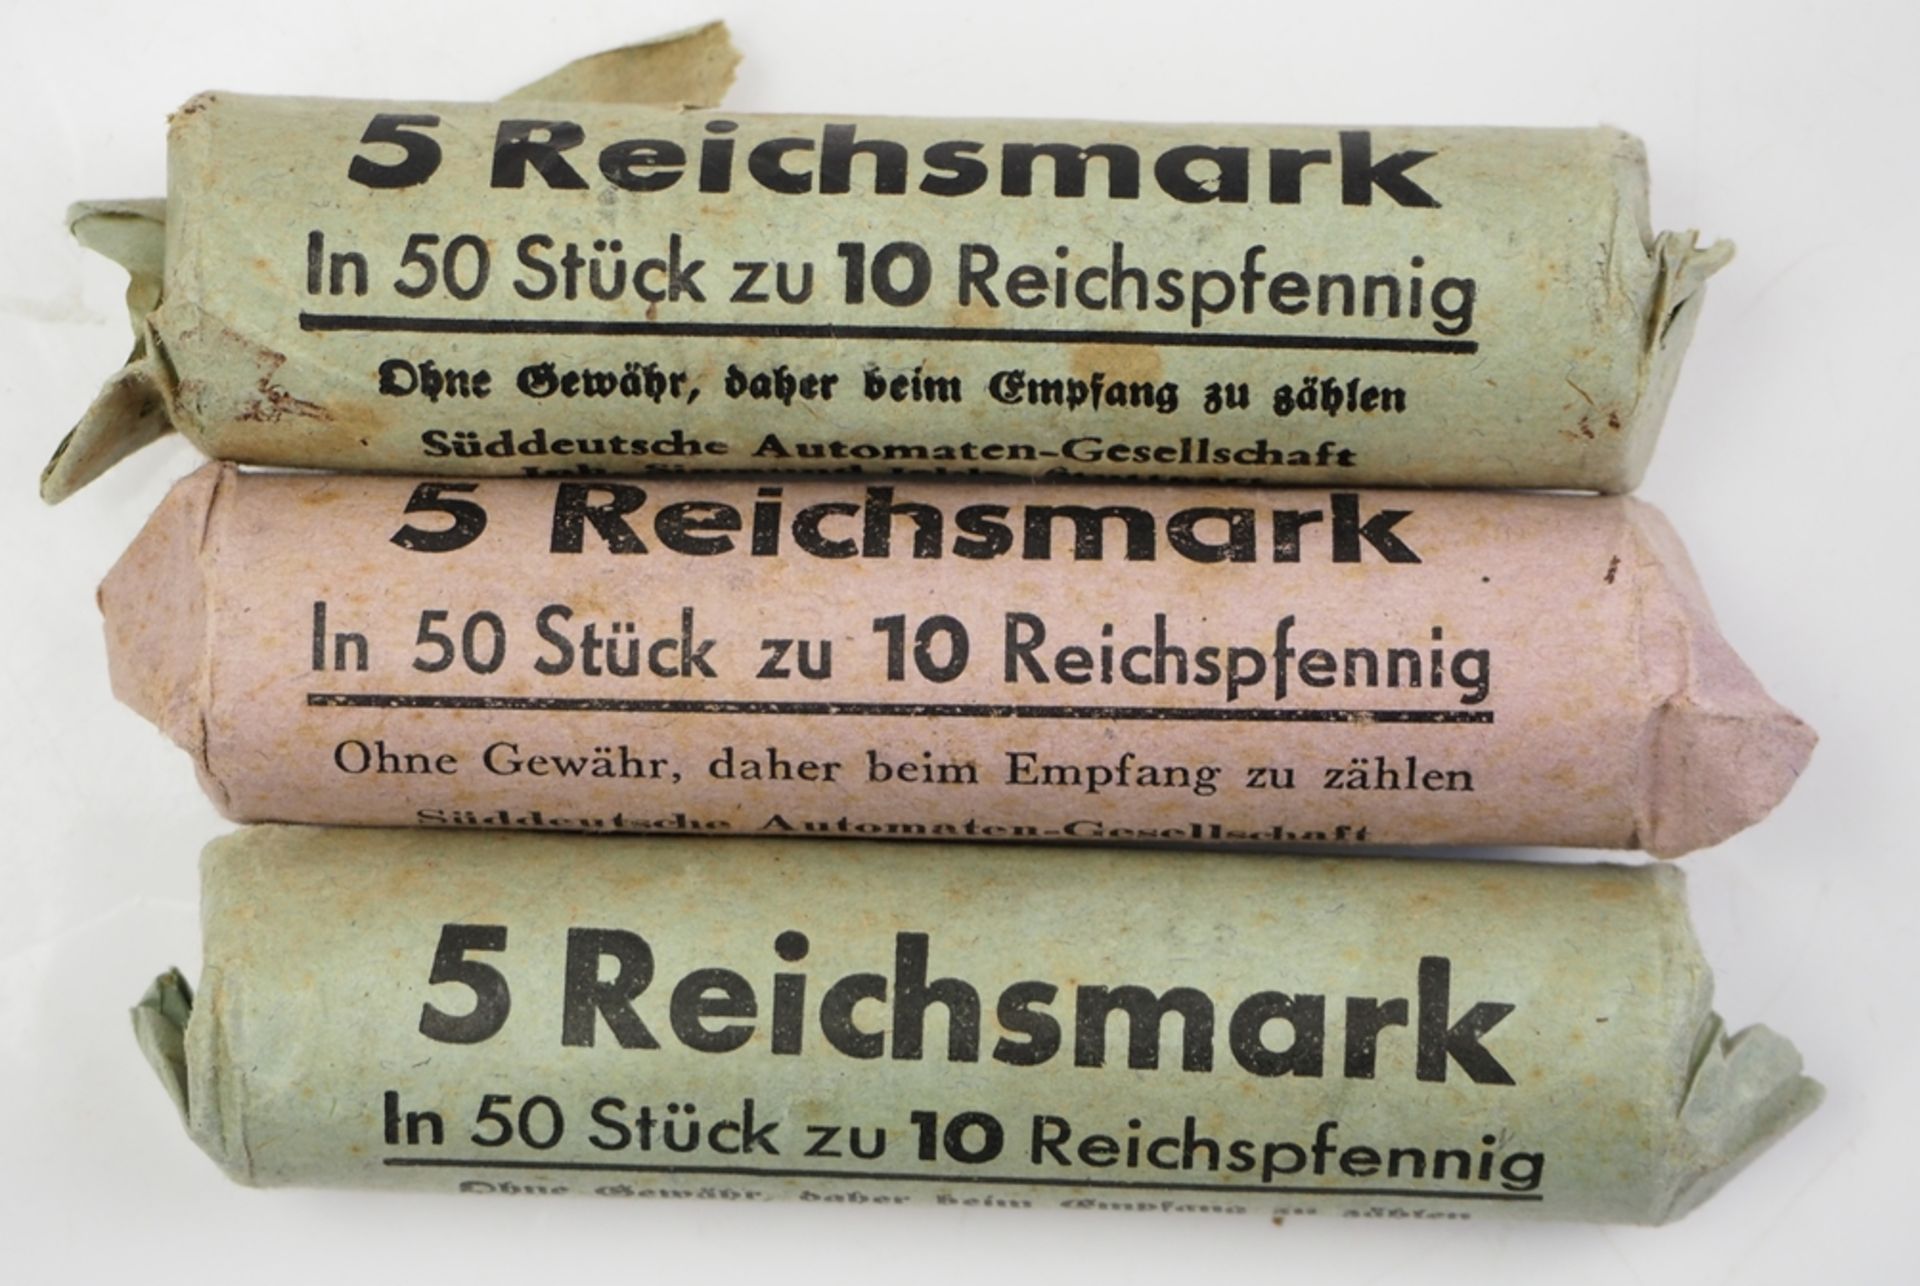 15 Reichsmark - zu 3 Rollen á 10 Reichspfenning. - Image 2 of 2